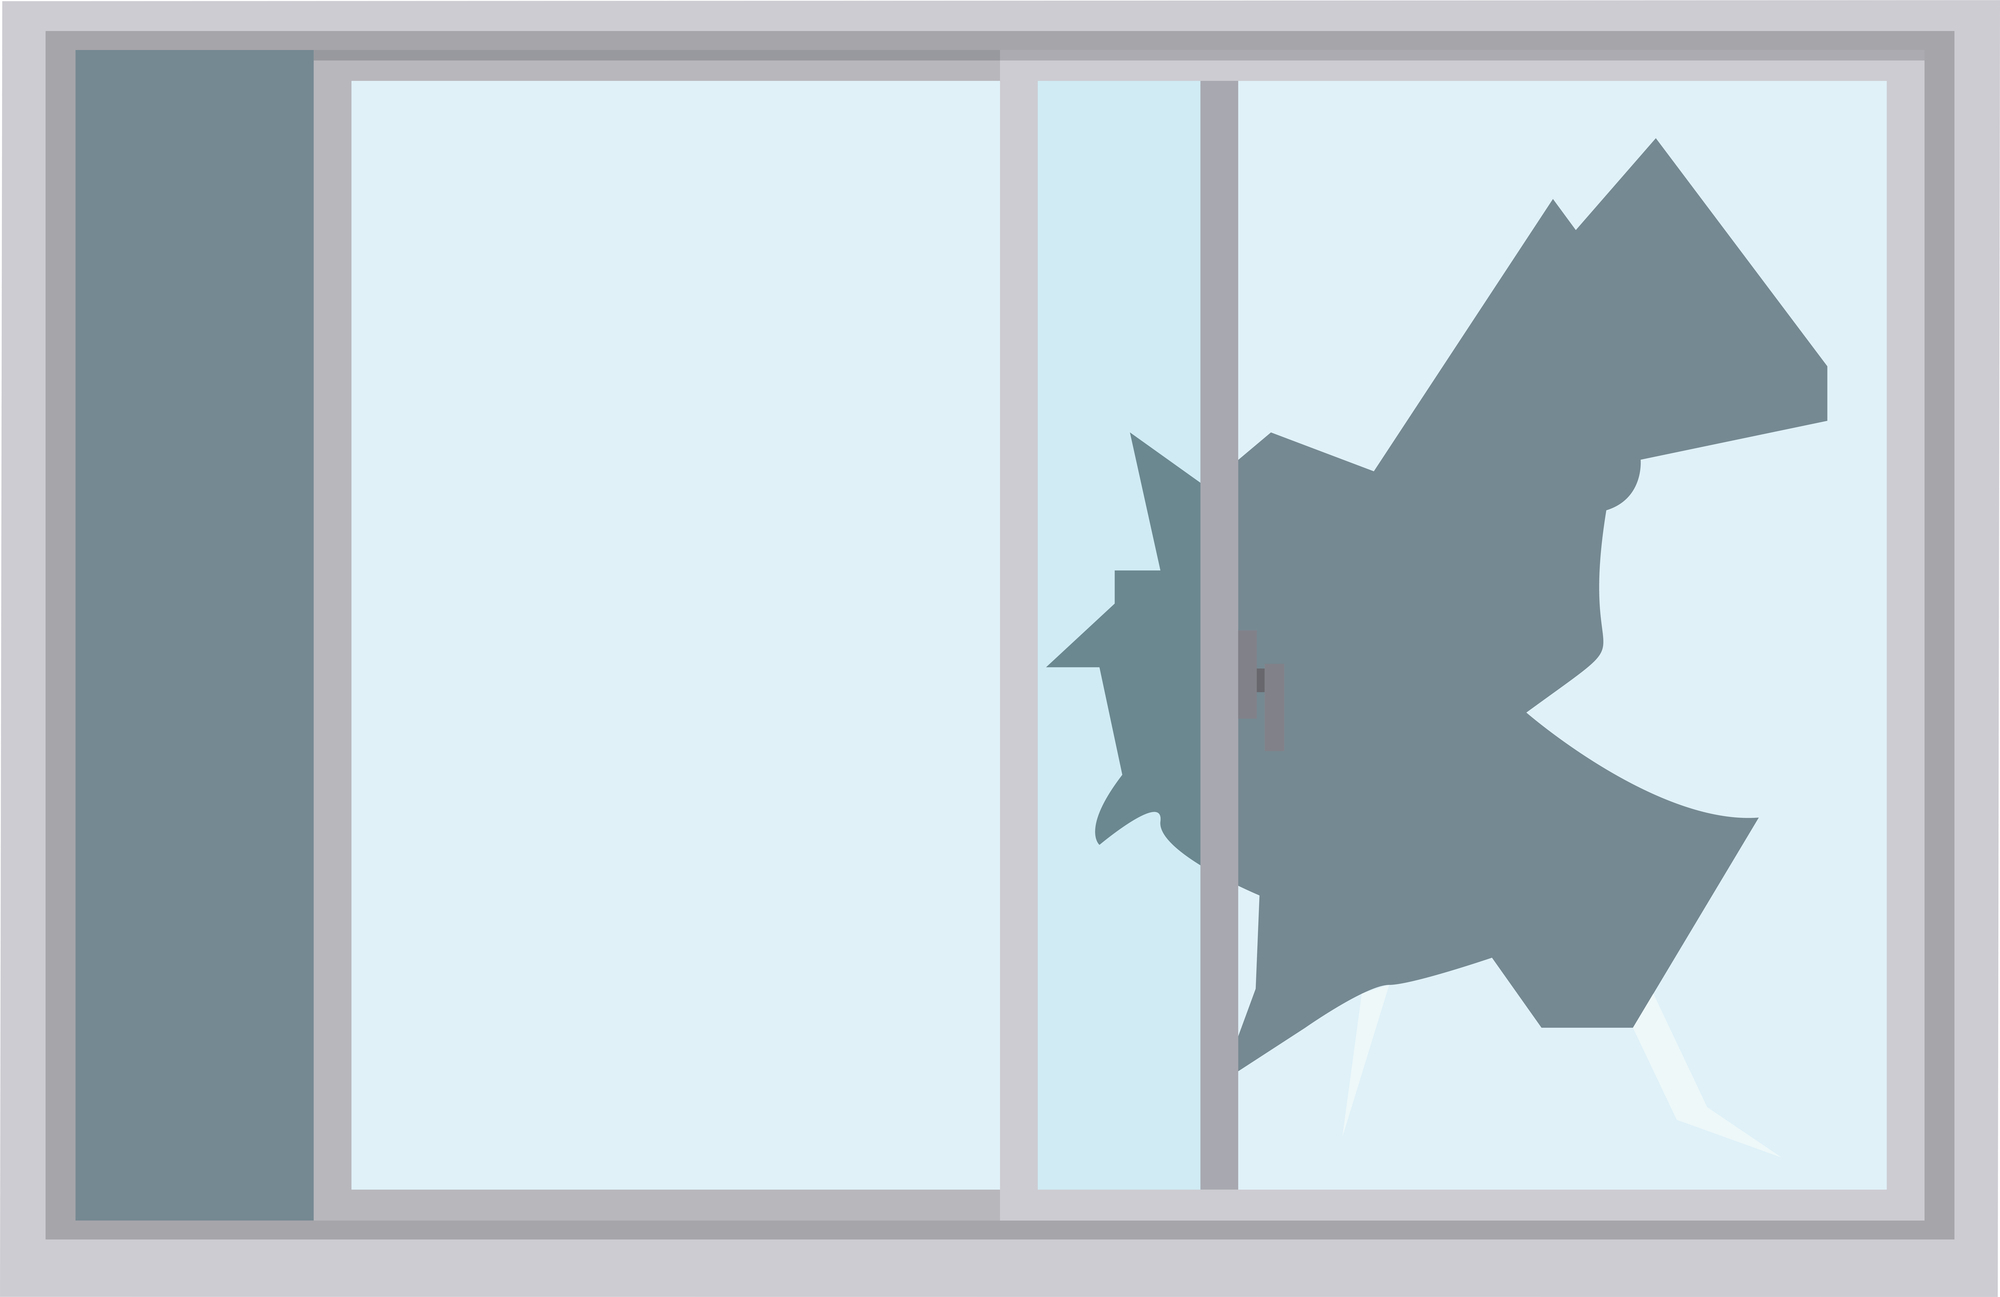 侵入されやすい窓の特徴とは？窓破りの手口を知って有効な防犯対策を